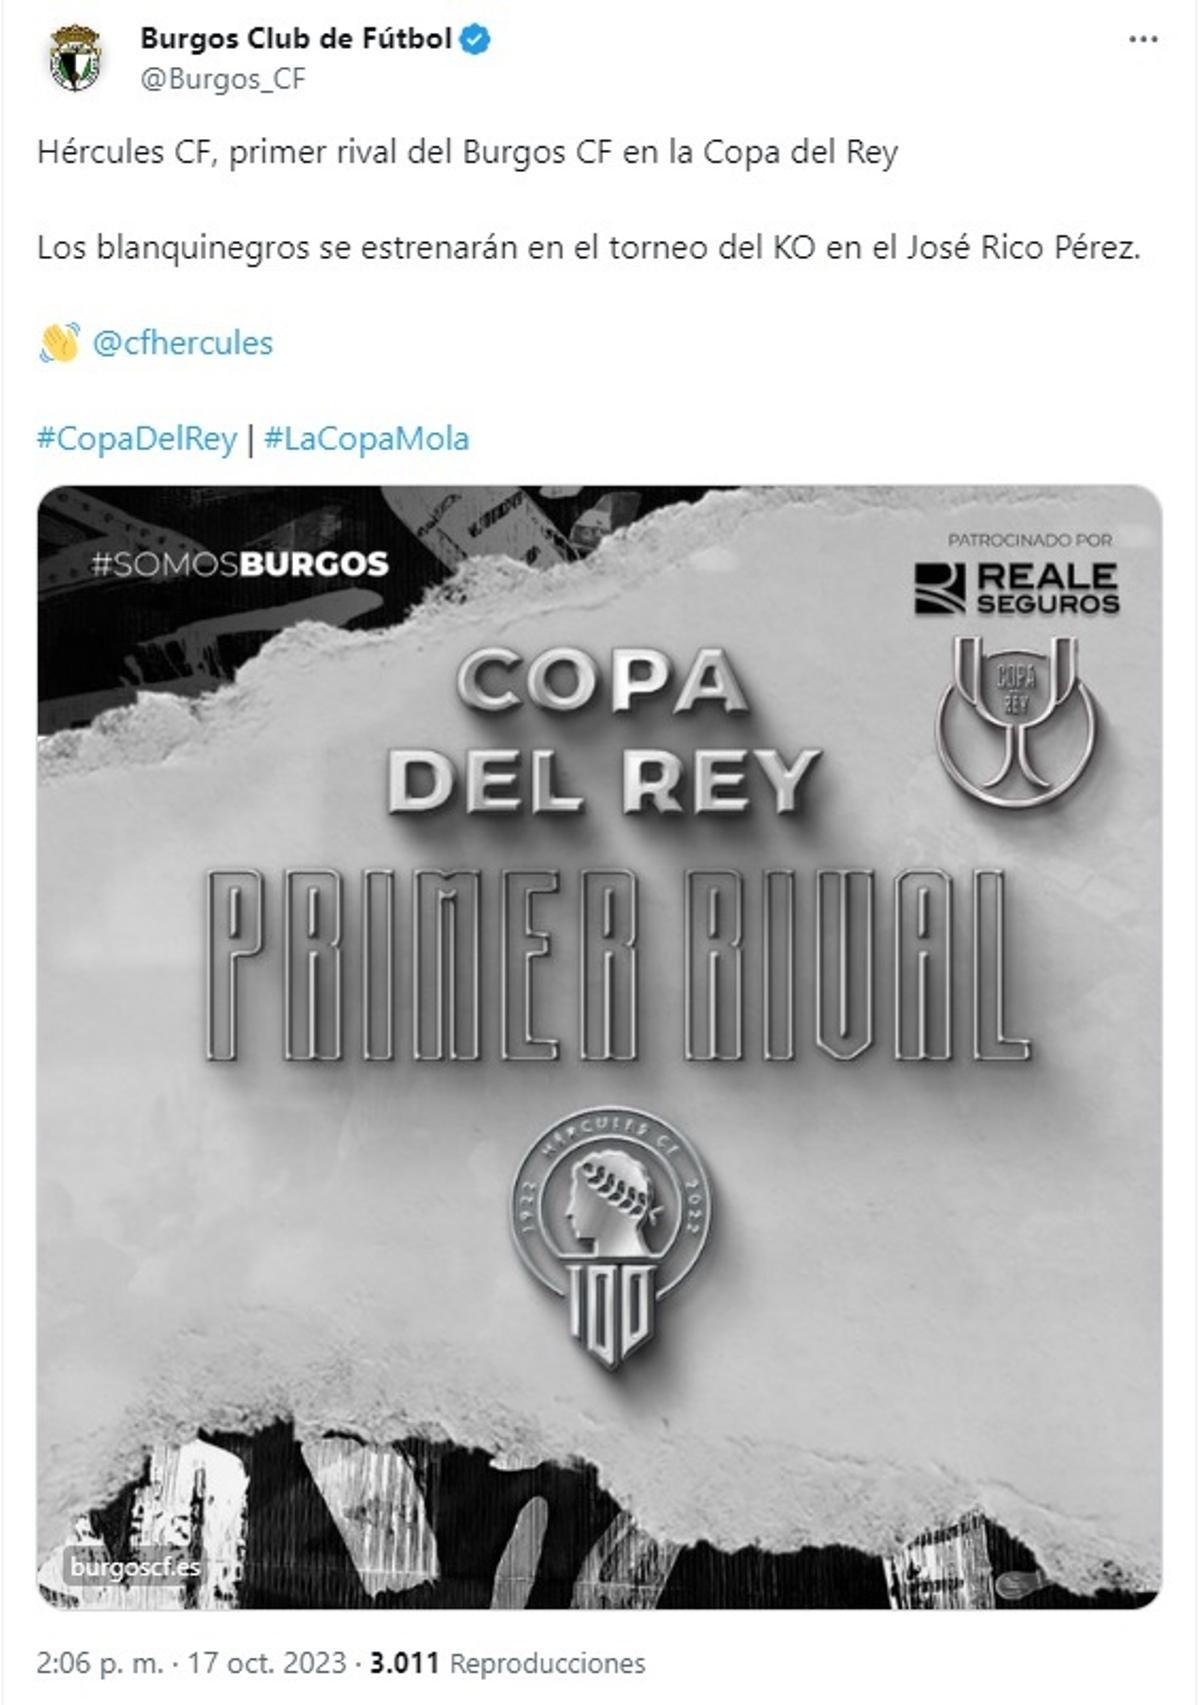 Tuit del Burgos CF anunciando su visita al Rico Pérez en la Copa del Rey.